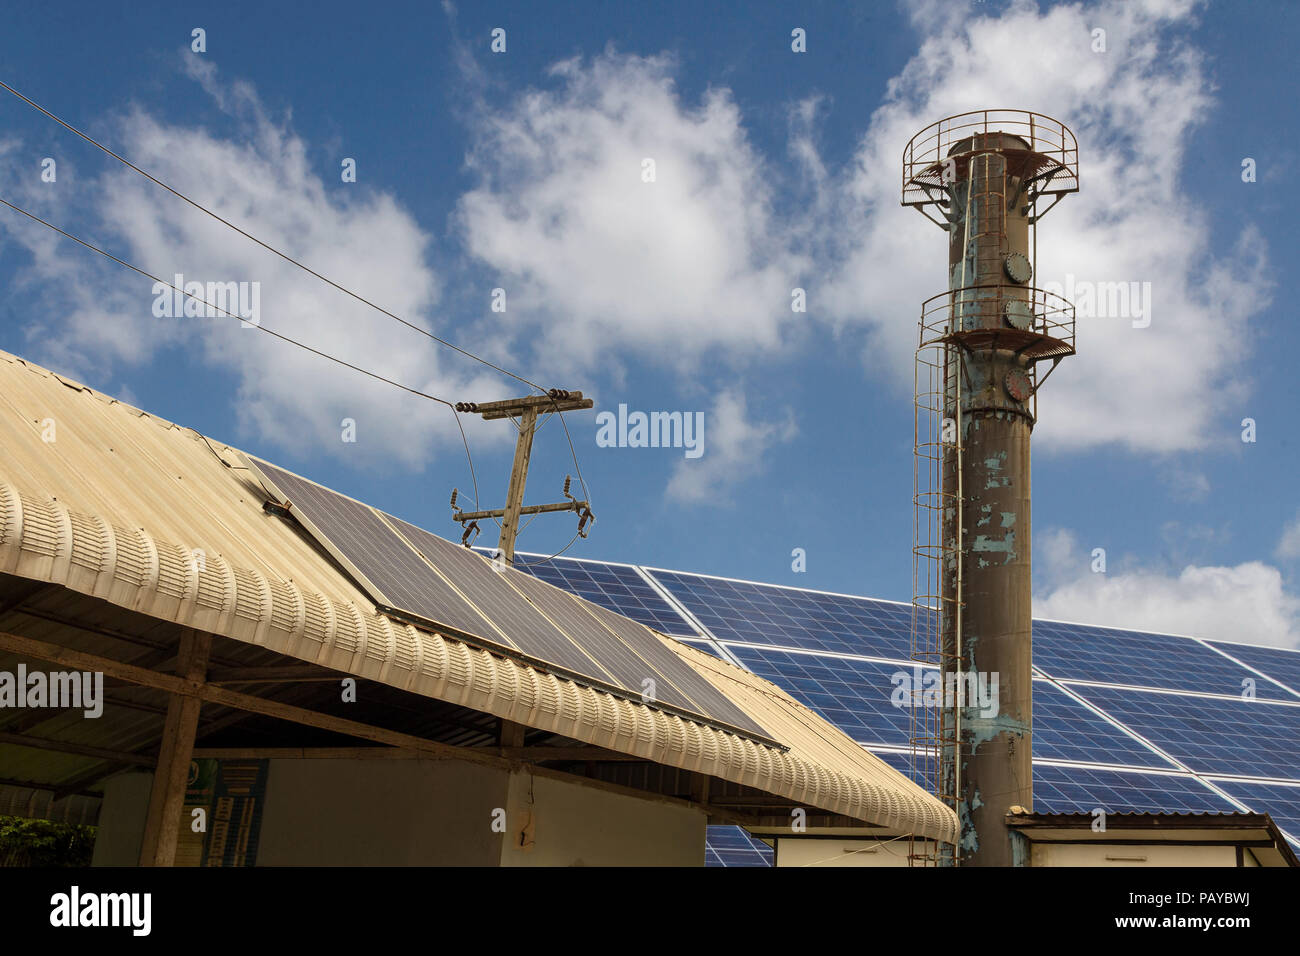 Un village est équipé de panneaux solaires pour fournir de l'électricité pour les utilitaires système. Banque D'Images